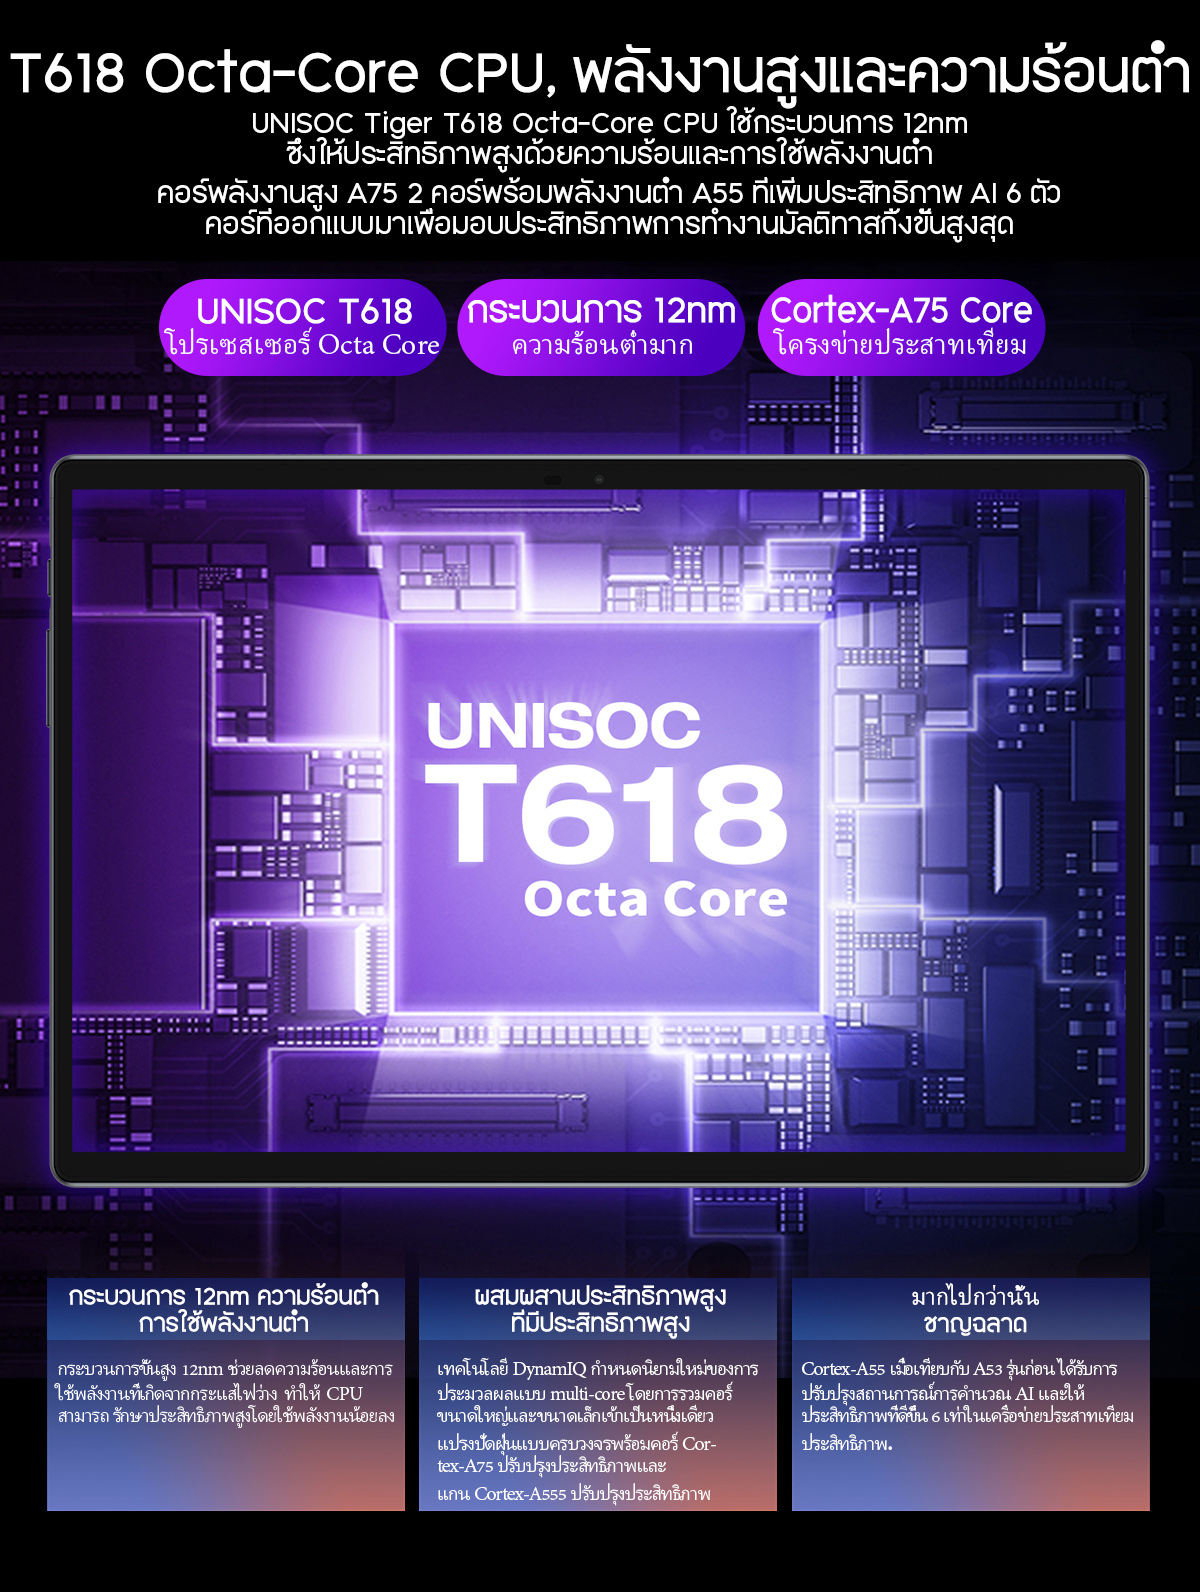 รูปภาพของ TECLAST M40Pro แท็บเล็ต 10.1 นิ้ว 1920*1200 หน้าจอ IPS Android11 CPU T618 octa-core 6GB/128GB แบตเตอรี่ขนาดใหญ่สุด 7000mAh ลำโพงสเตอริโอสี่ตัว เกม ความบันเทิง การเรียนรู้